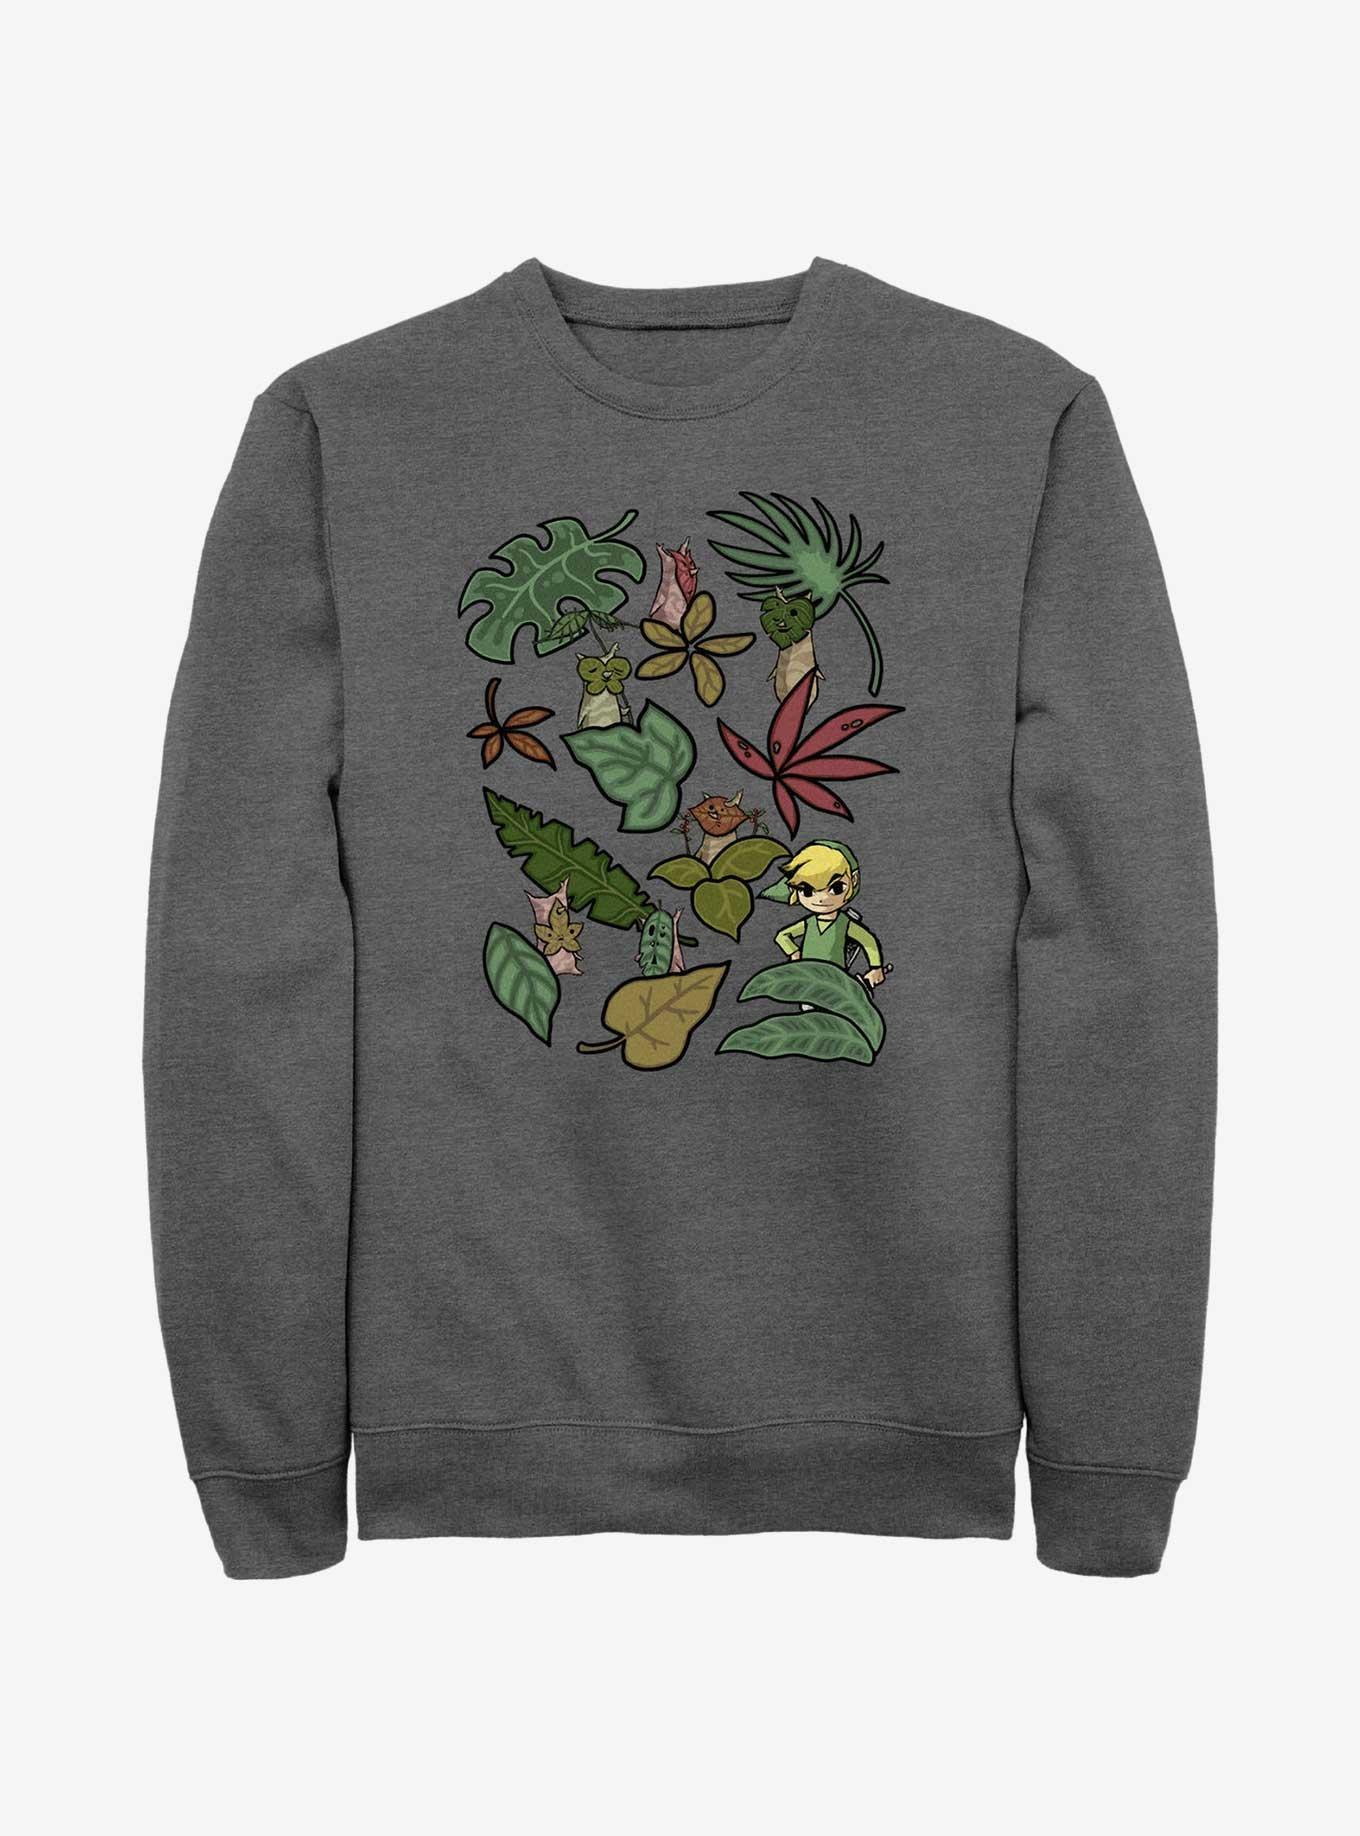 The Legend of Zelda Leafy Link Sweatshirt